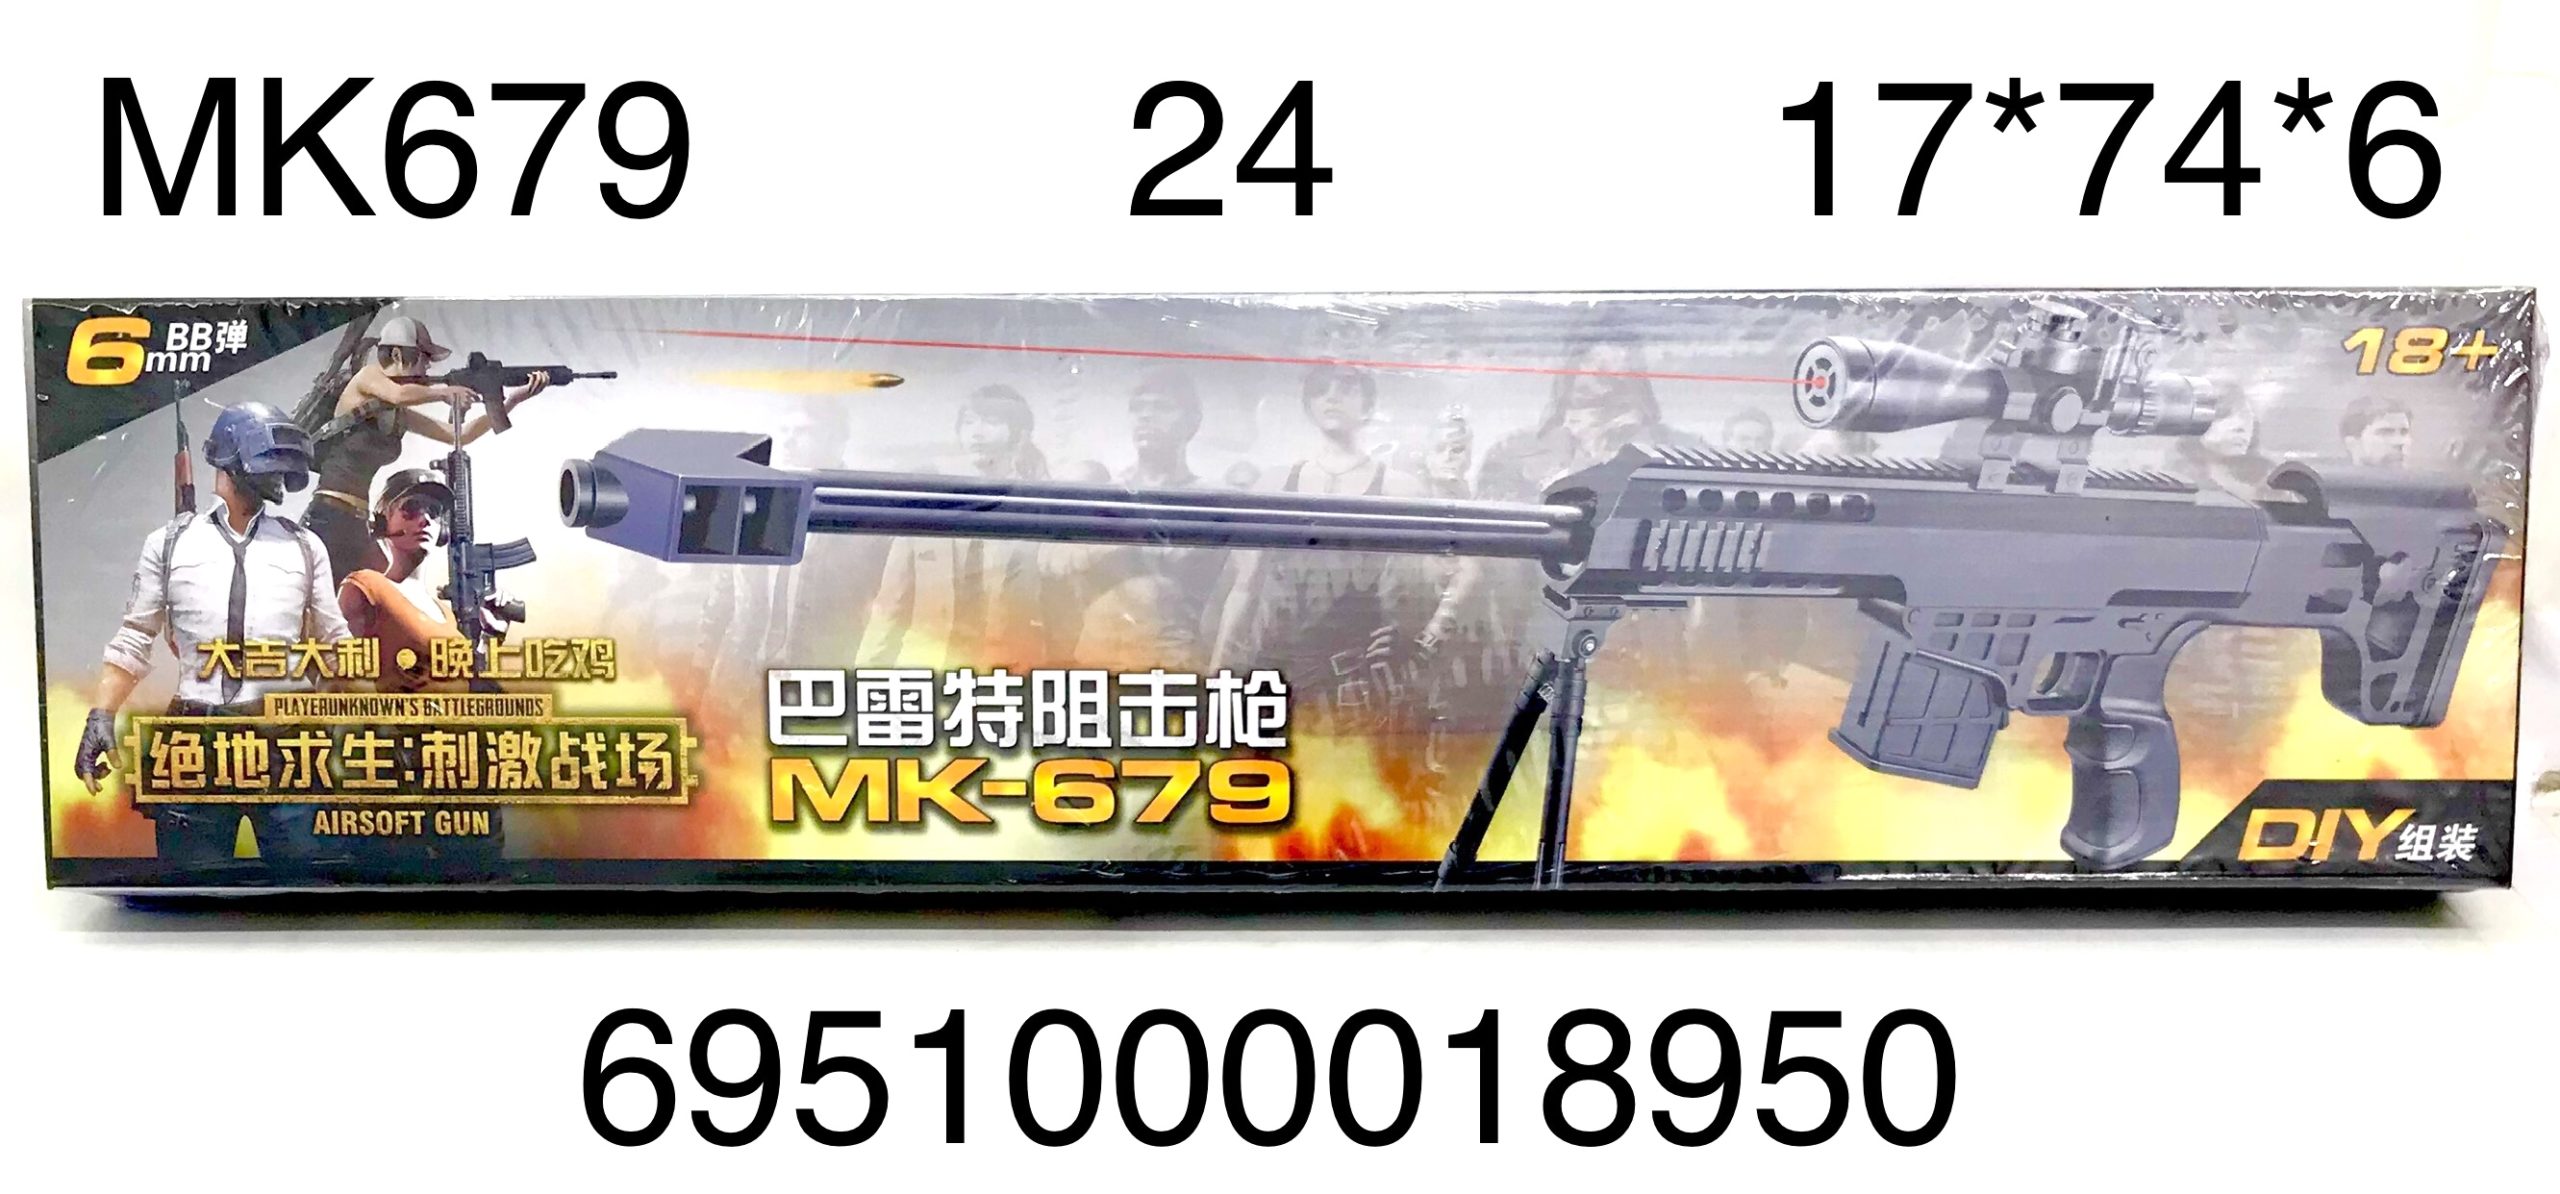 Оружие МК679 с лазерным прицелом - Йошкар-Ола 